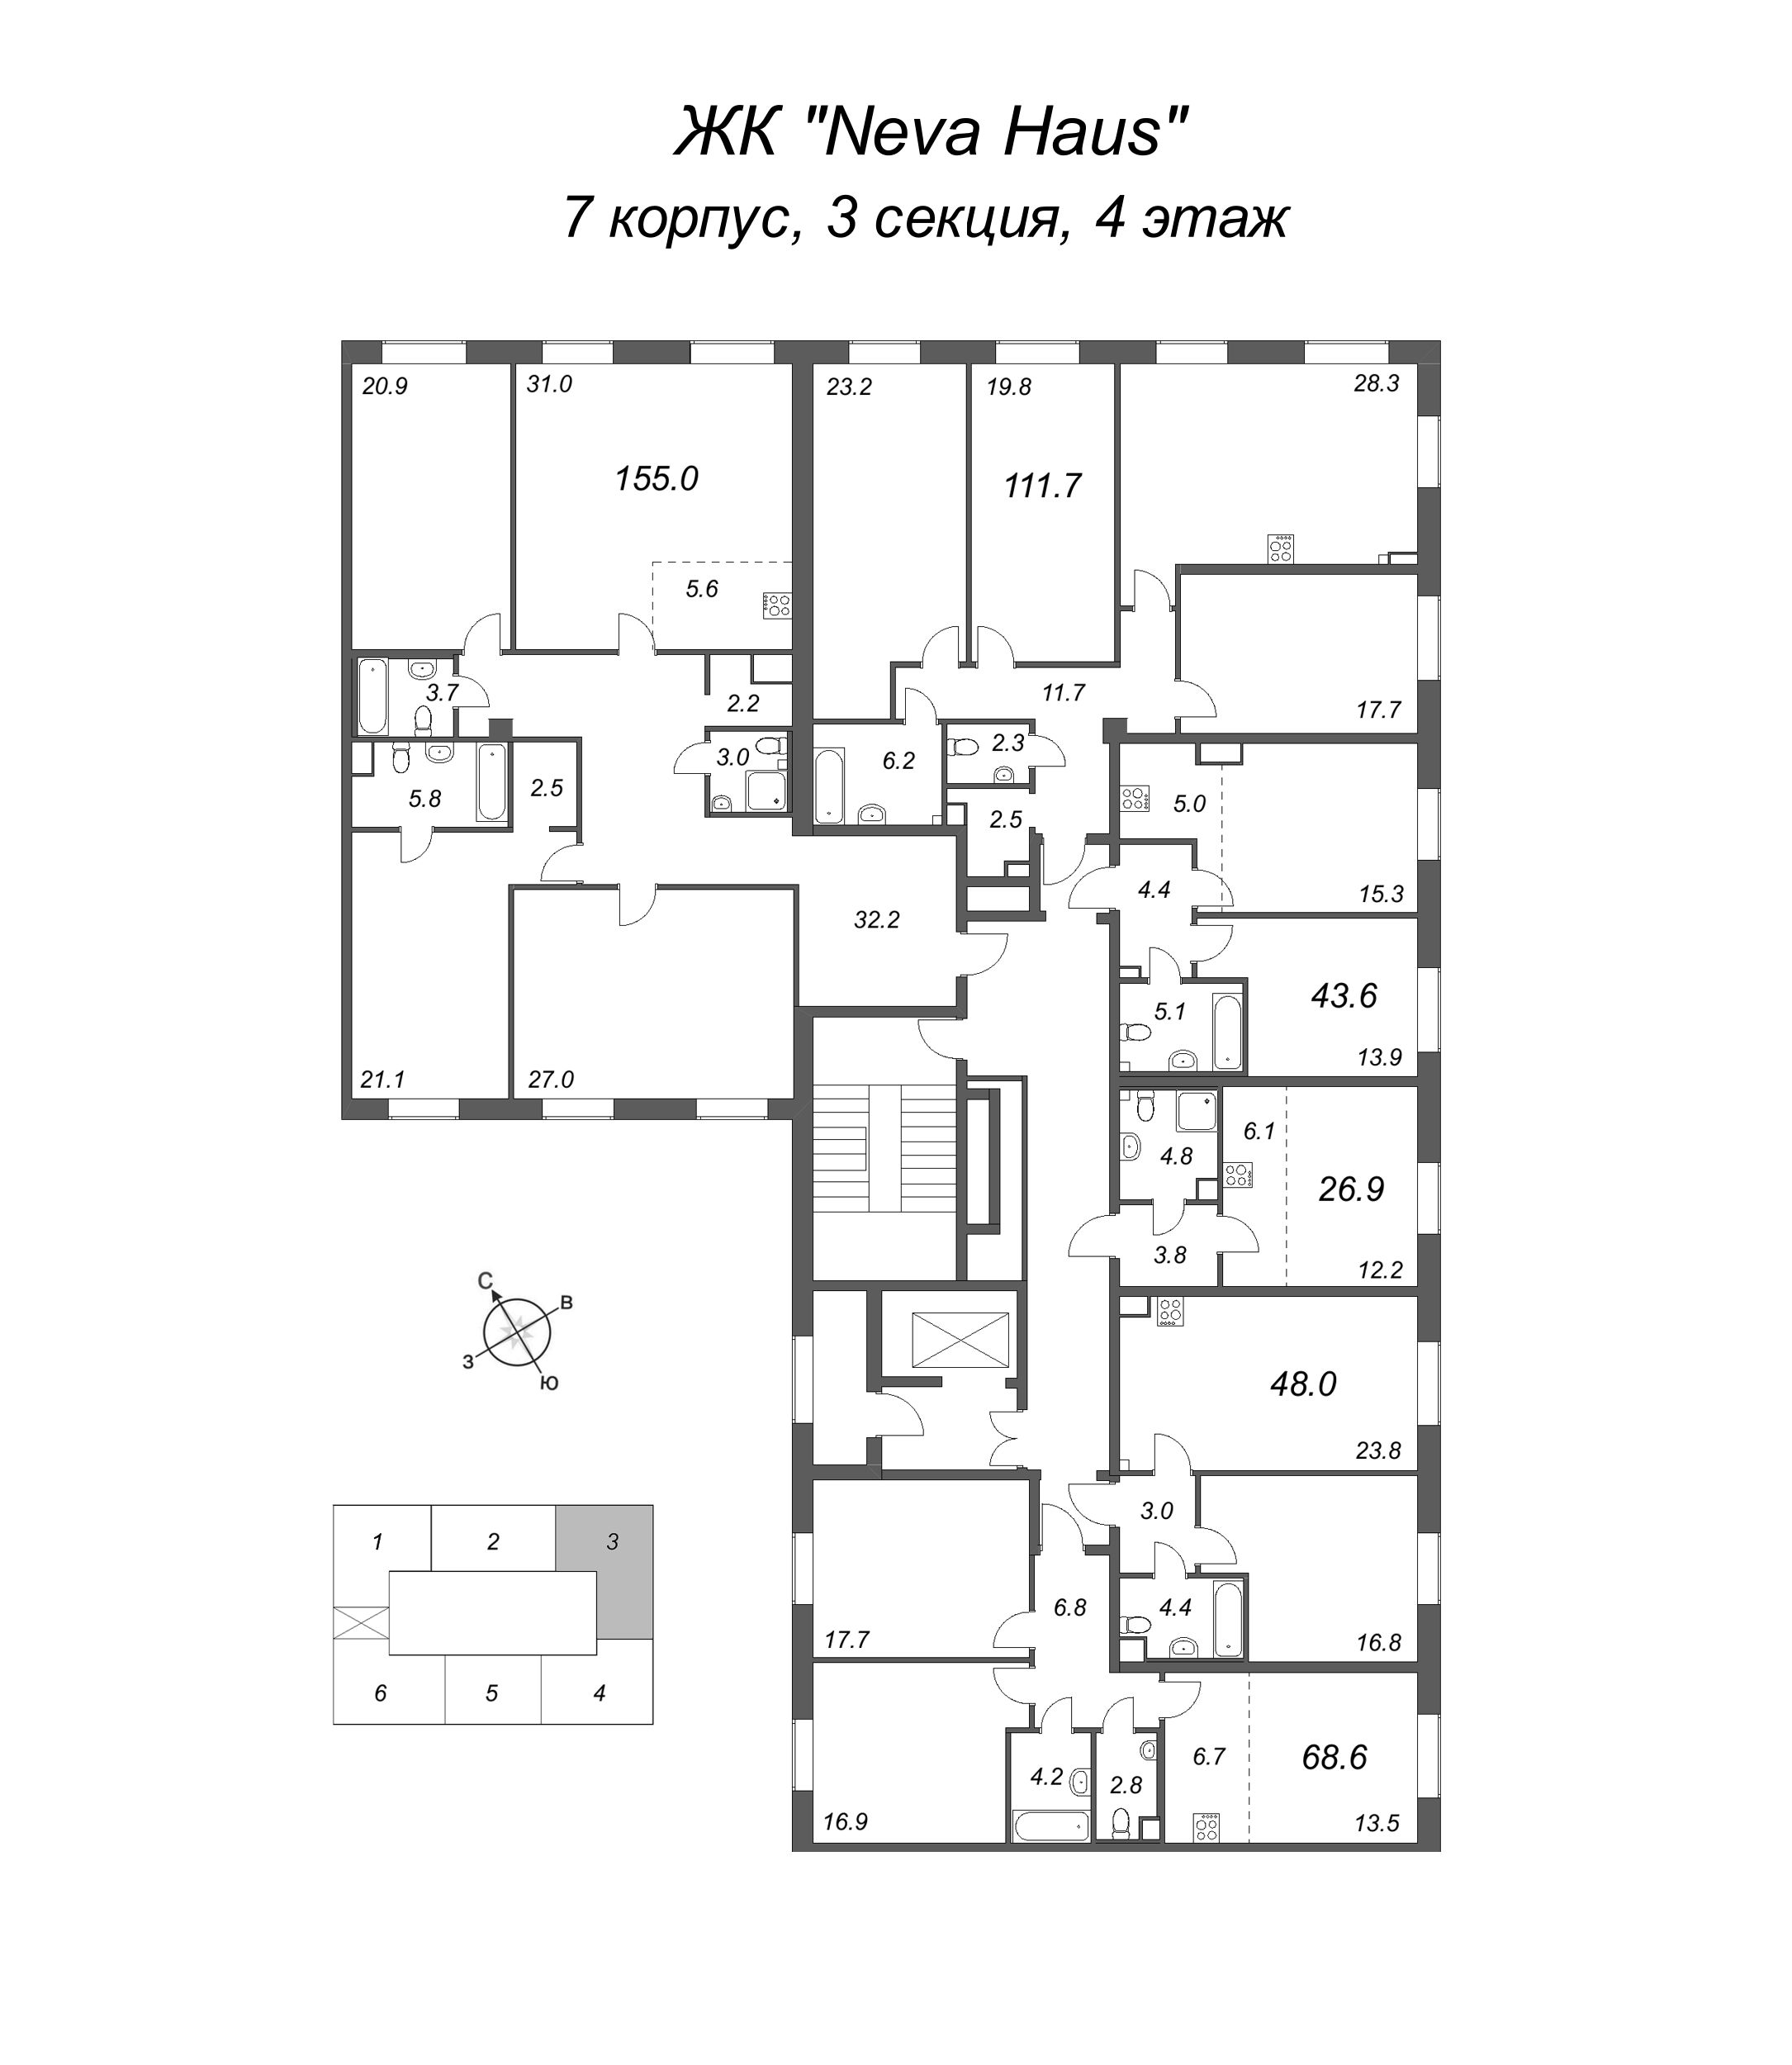 4-комнатная (Евро) квартира, 112.8 м² в ЖК "Neva Haus" - планировка этажа